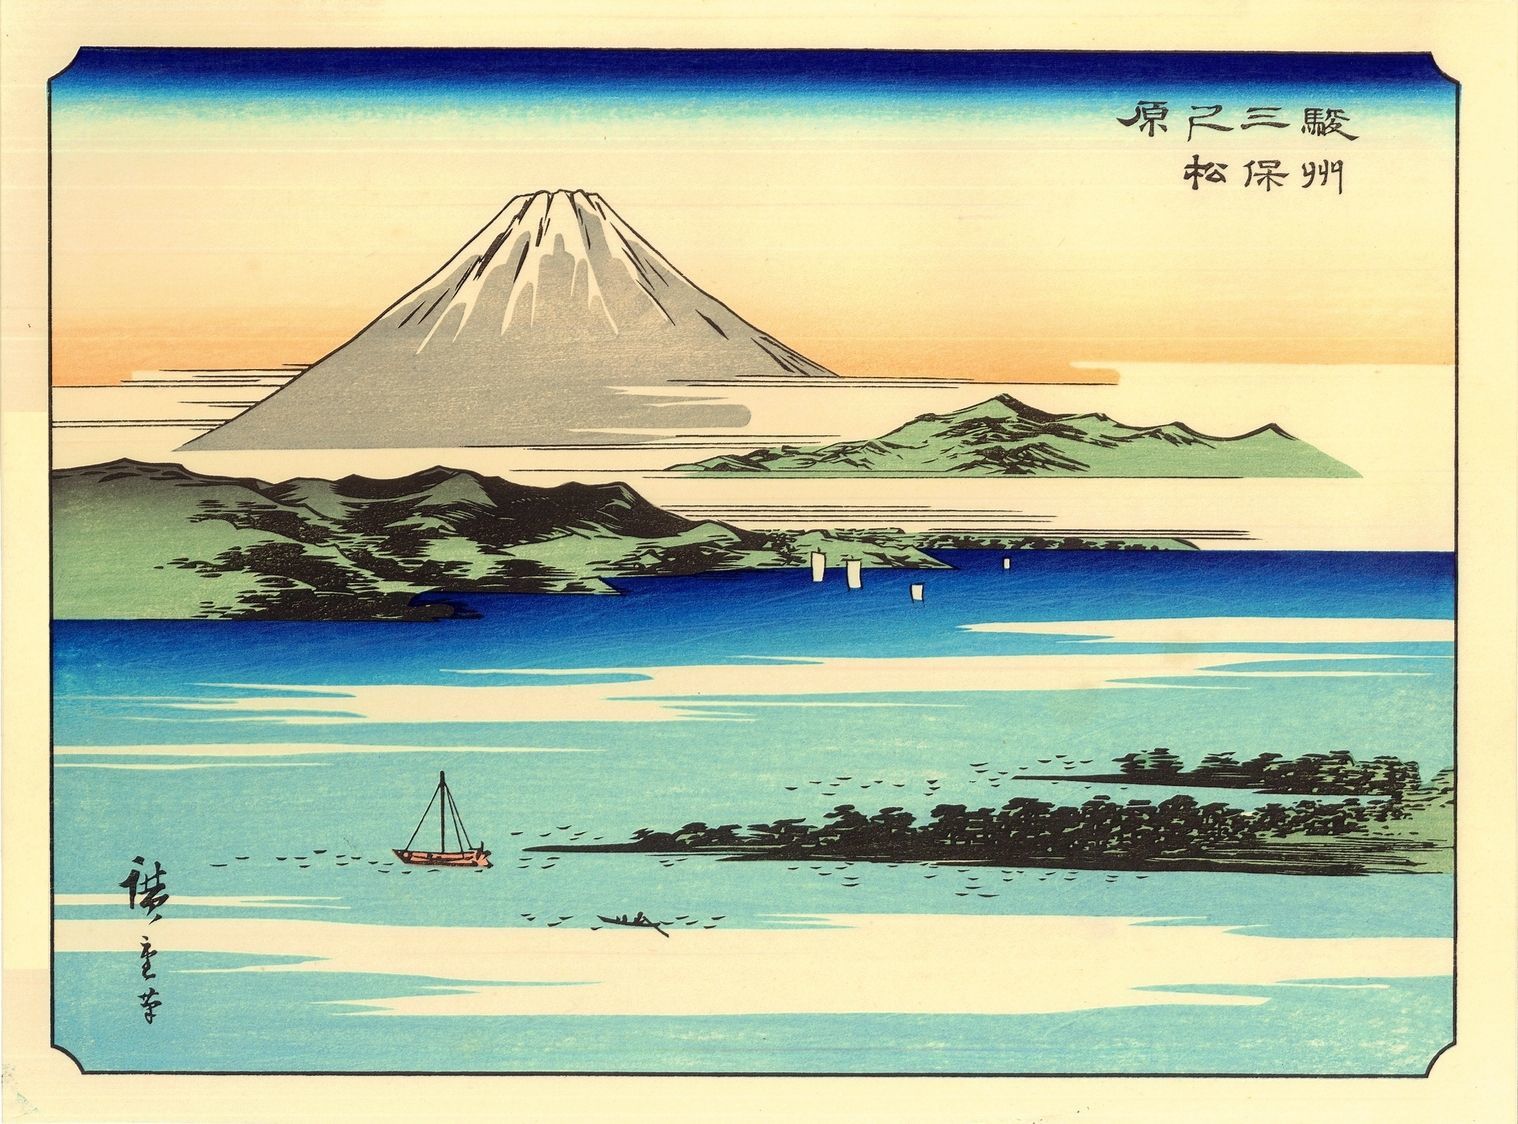 Vends véritables Estampes Japonaises Hiroshige de sa rare série des 36 Vues  du Mont Fuji - paris-vente-veritables-estampes-objets-art-japon.overblog.com